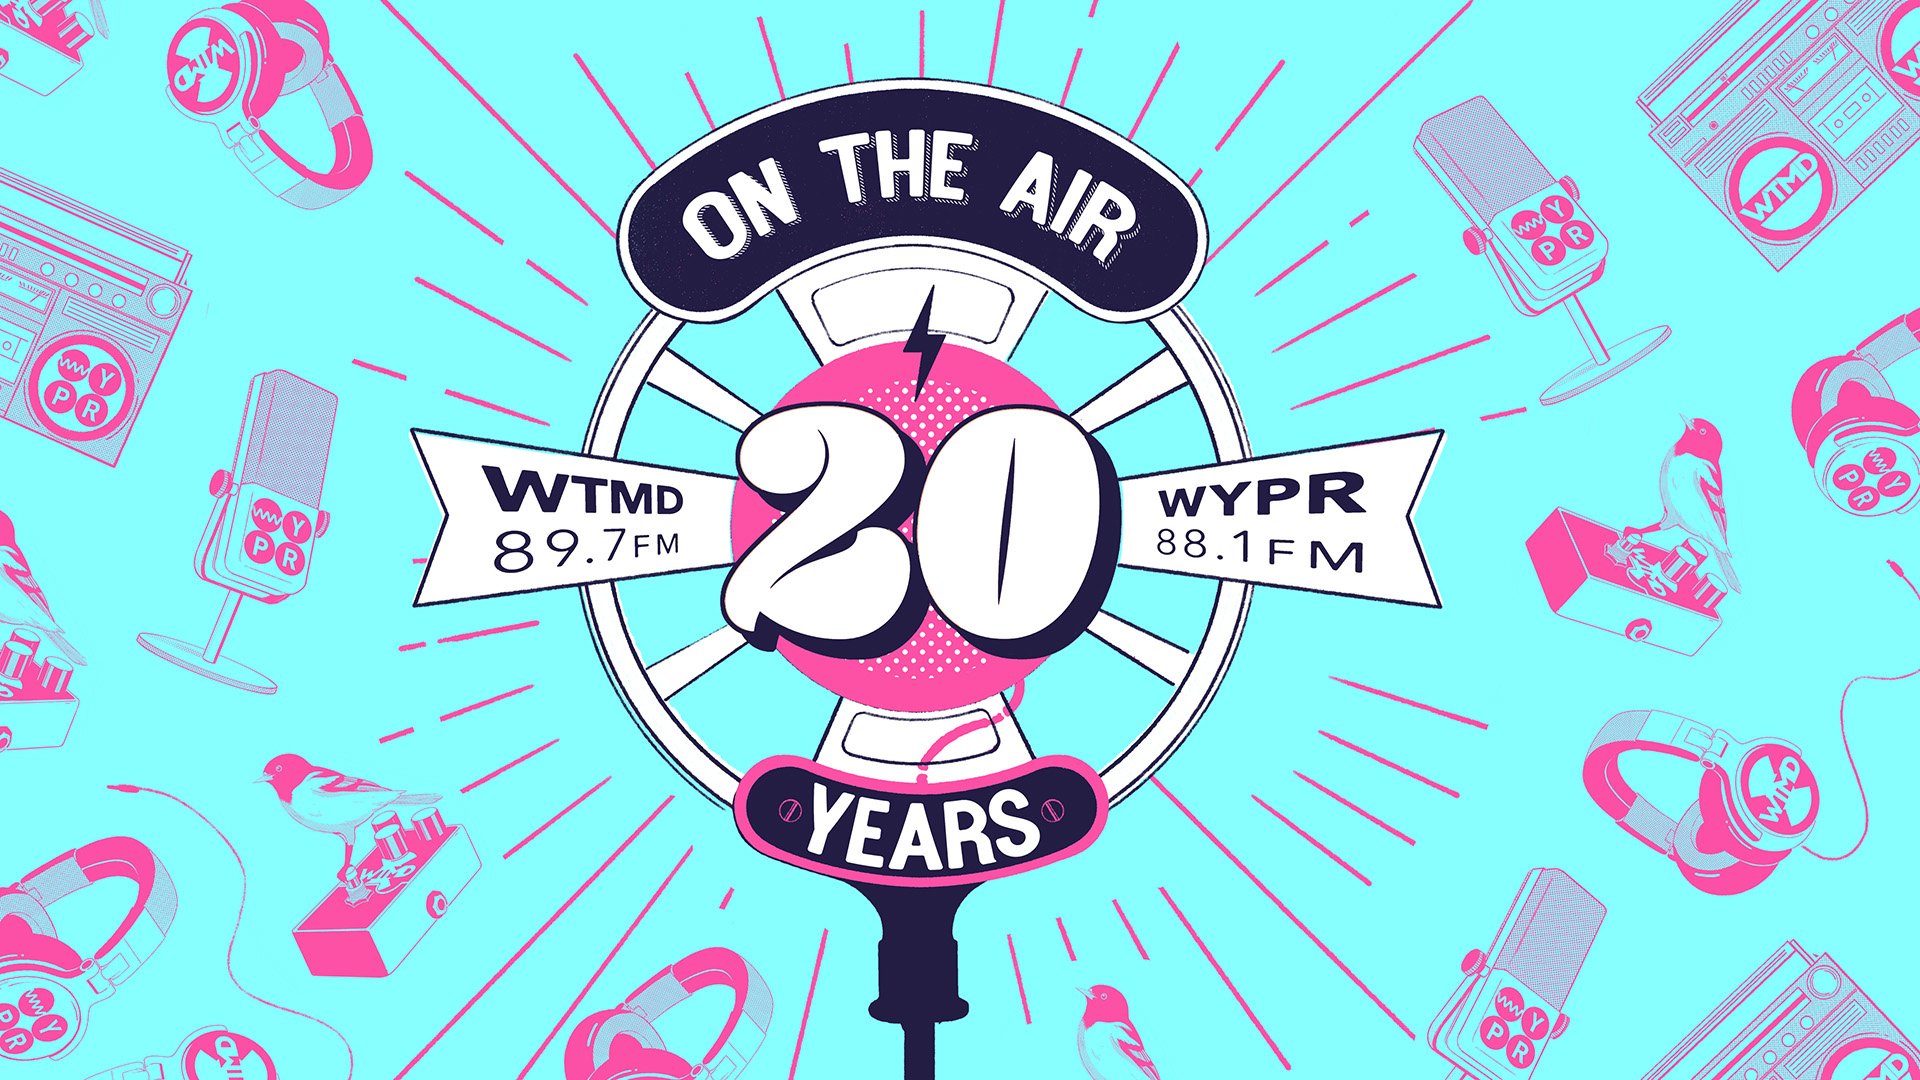 wtmd wypr's 20th anniversary bash